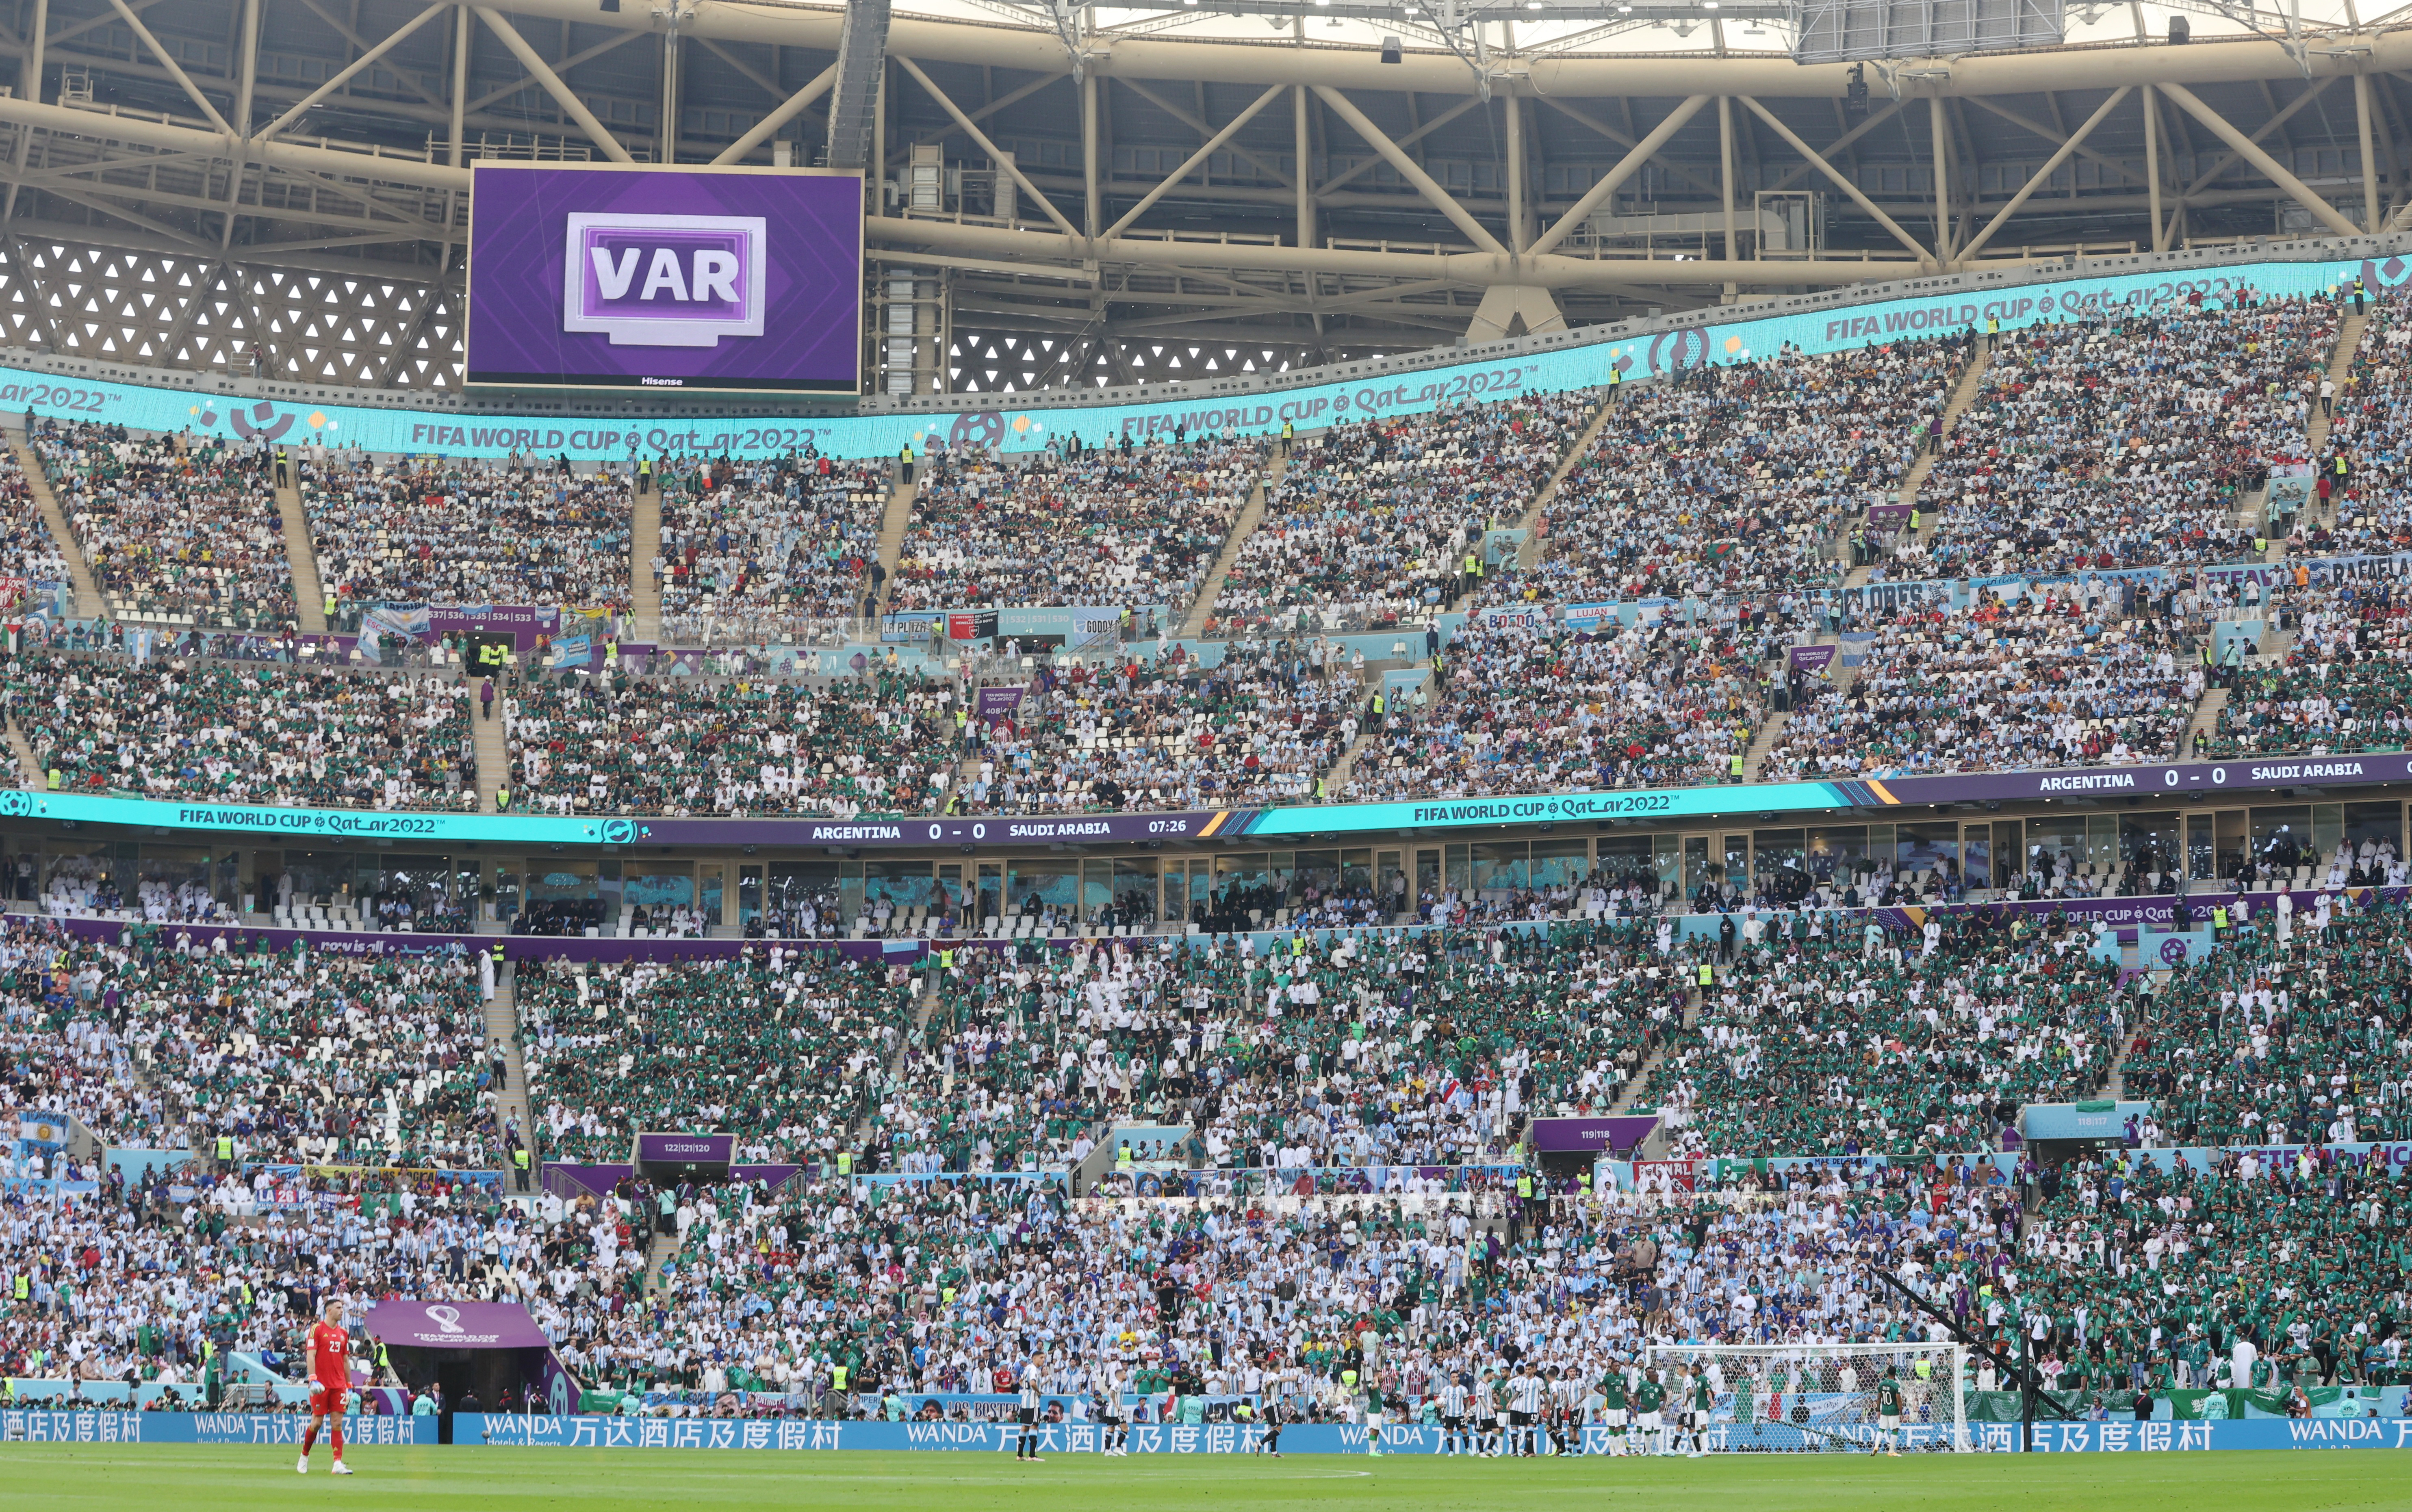 La pantalla gigante anuncia la revisión del VAR durante Argentina - Arabia Saudita en el Mundial Qatar 2022 (REUTERS/Carl Recine)